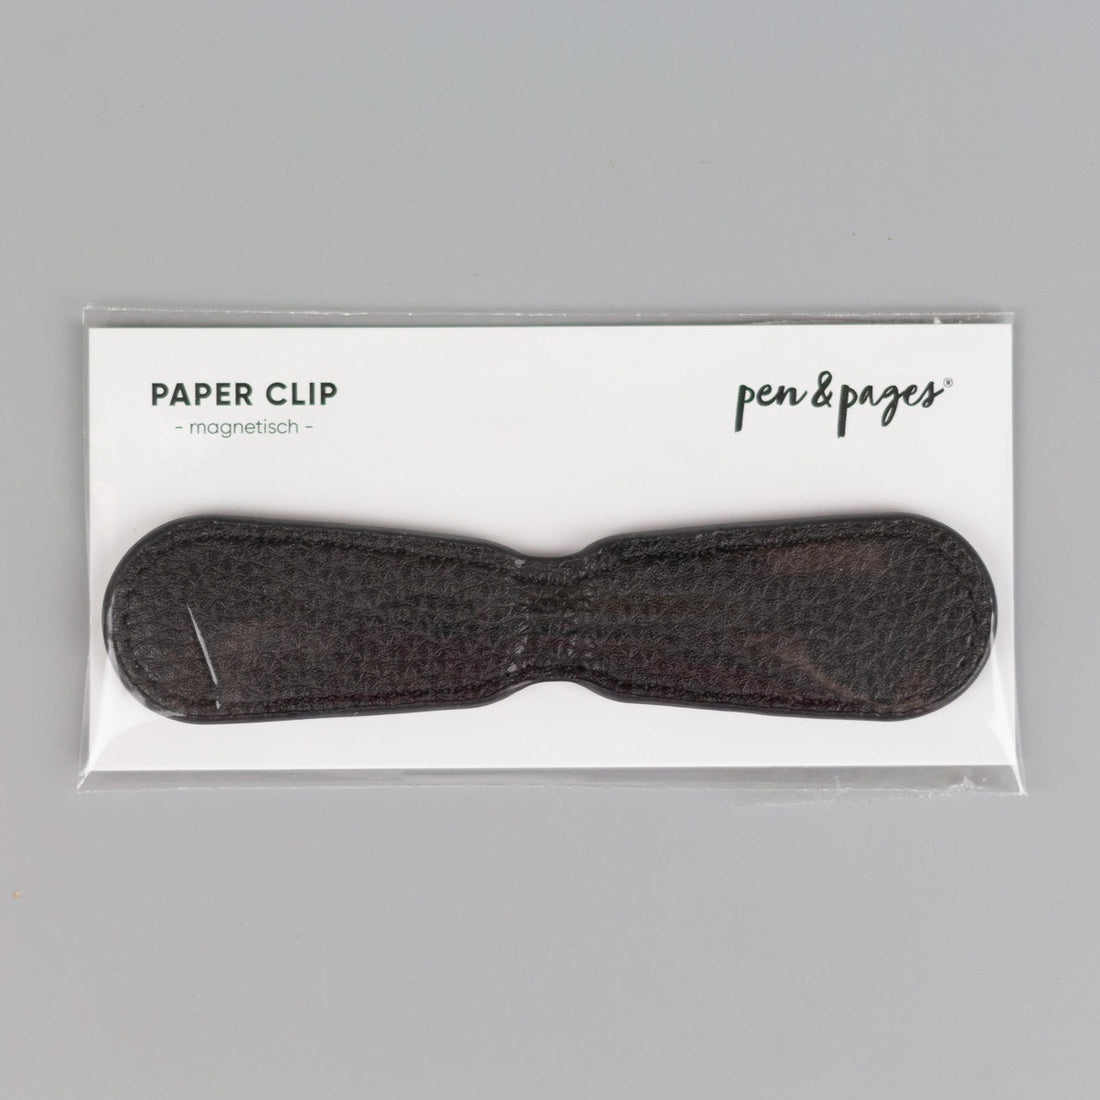 Magnetischer Paper Clip aus Kunstleder – Lesezeichen